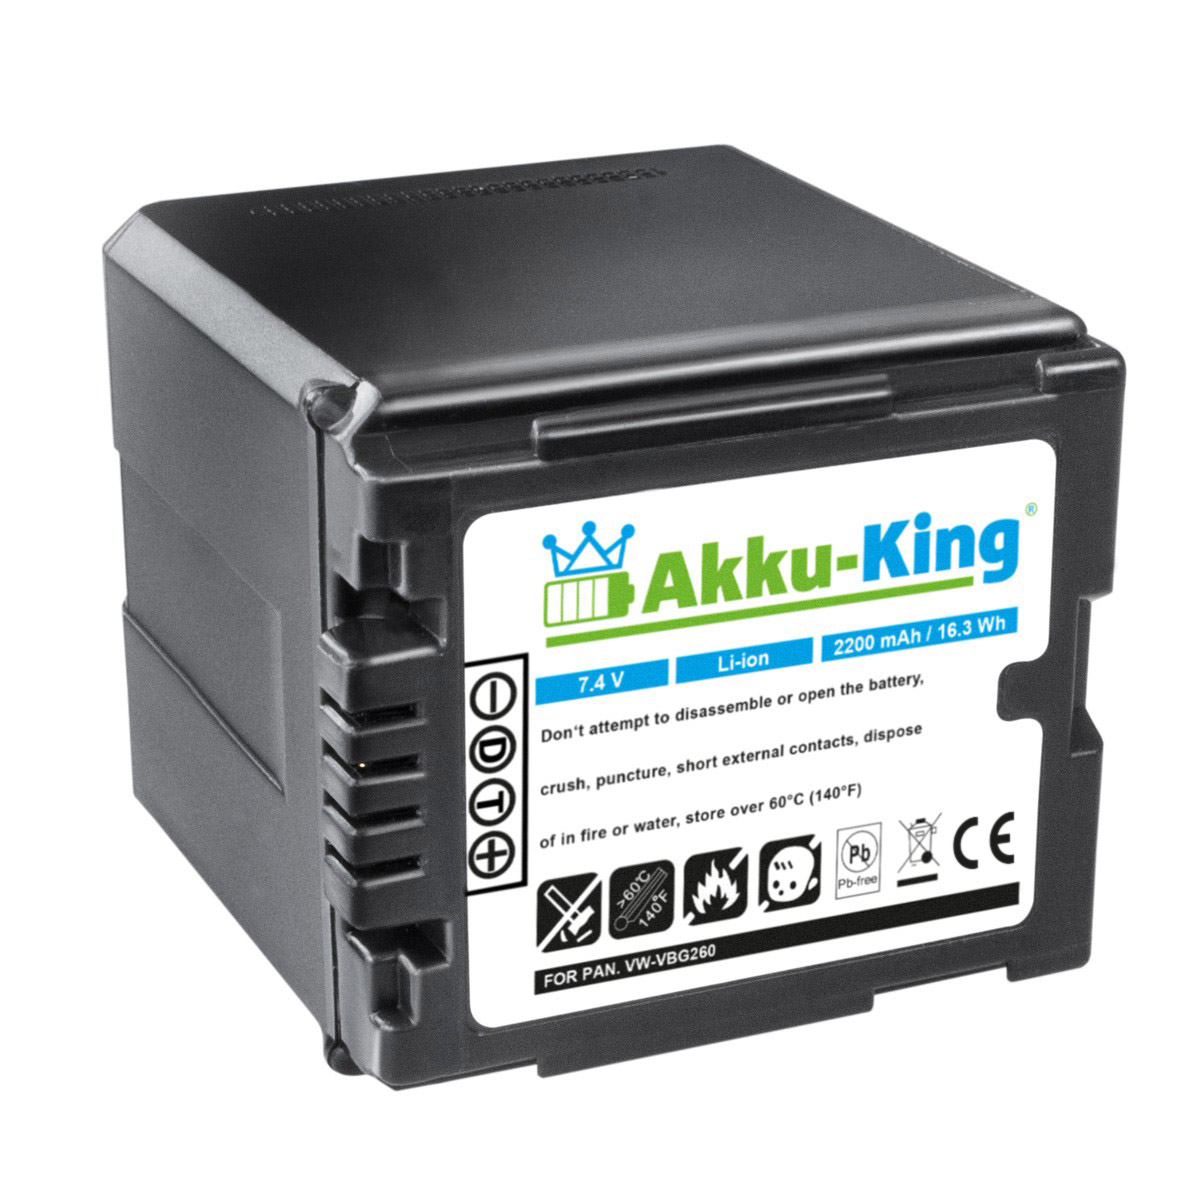 AKKU-KING Akku kompatibel mit Kamera-Akku, VW-VBG260 Panasonic Volt, Li-Ion 2200mAh 7.4